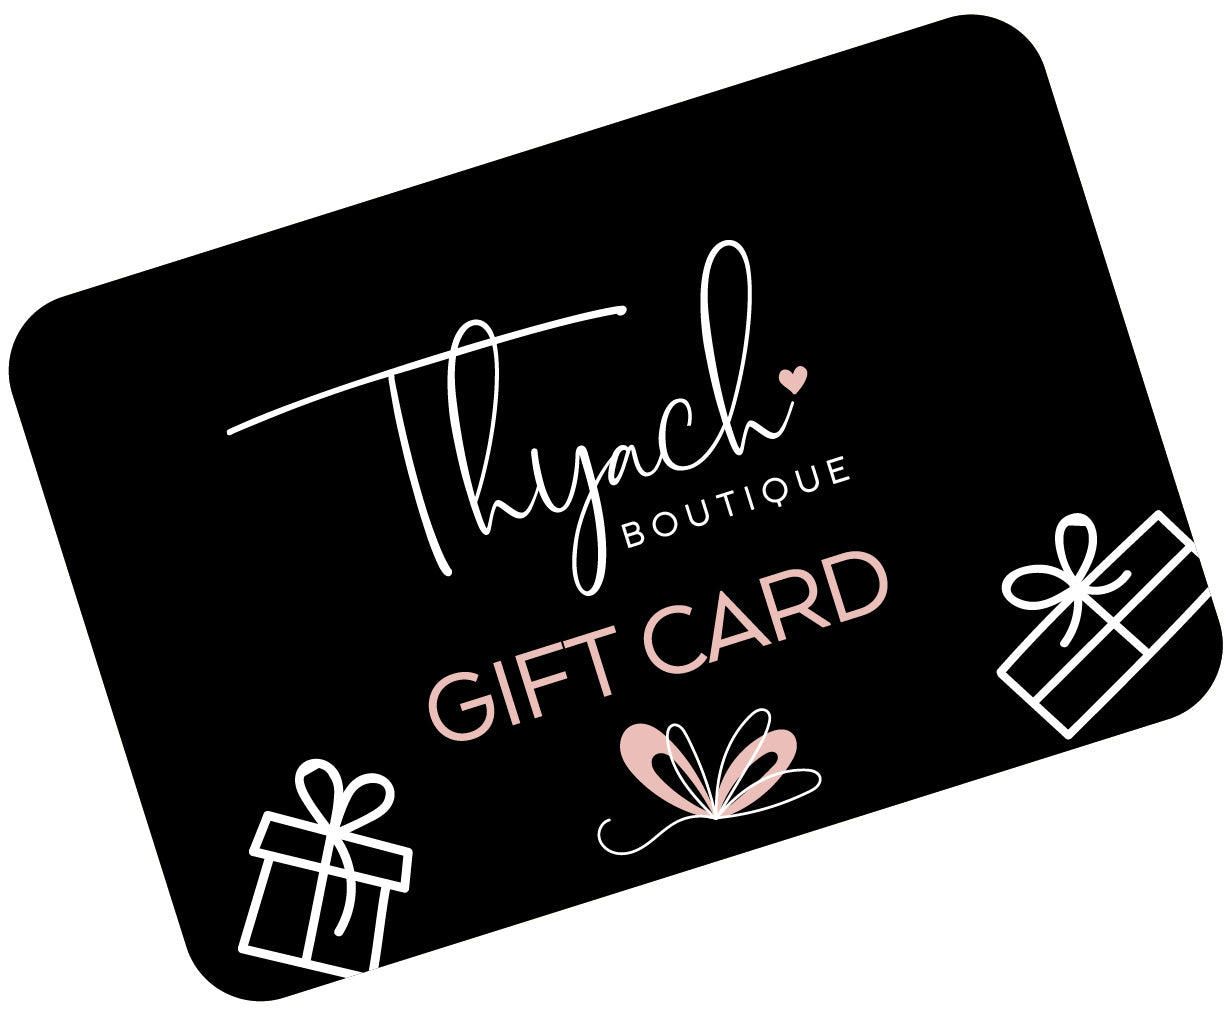 Thyach Gift Card